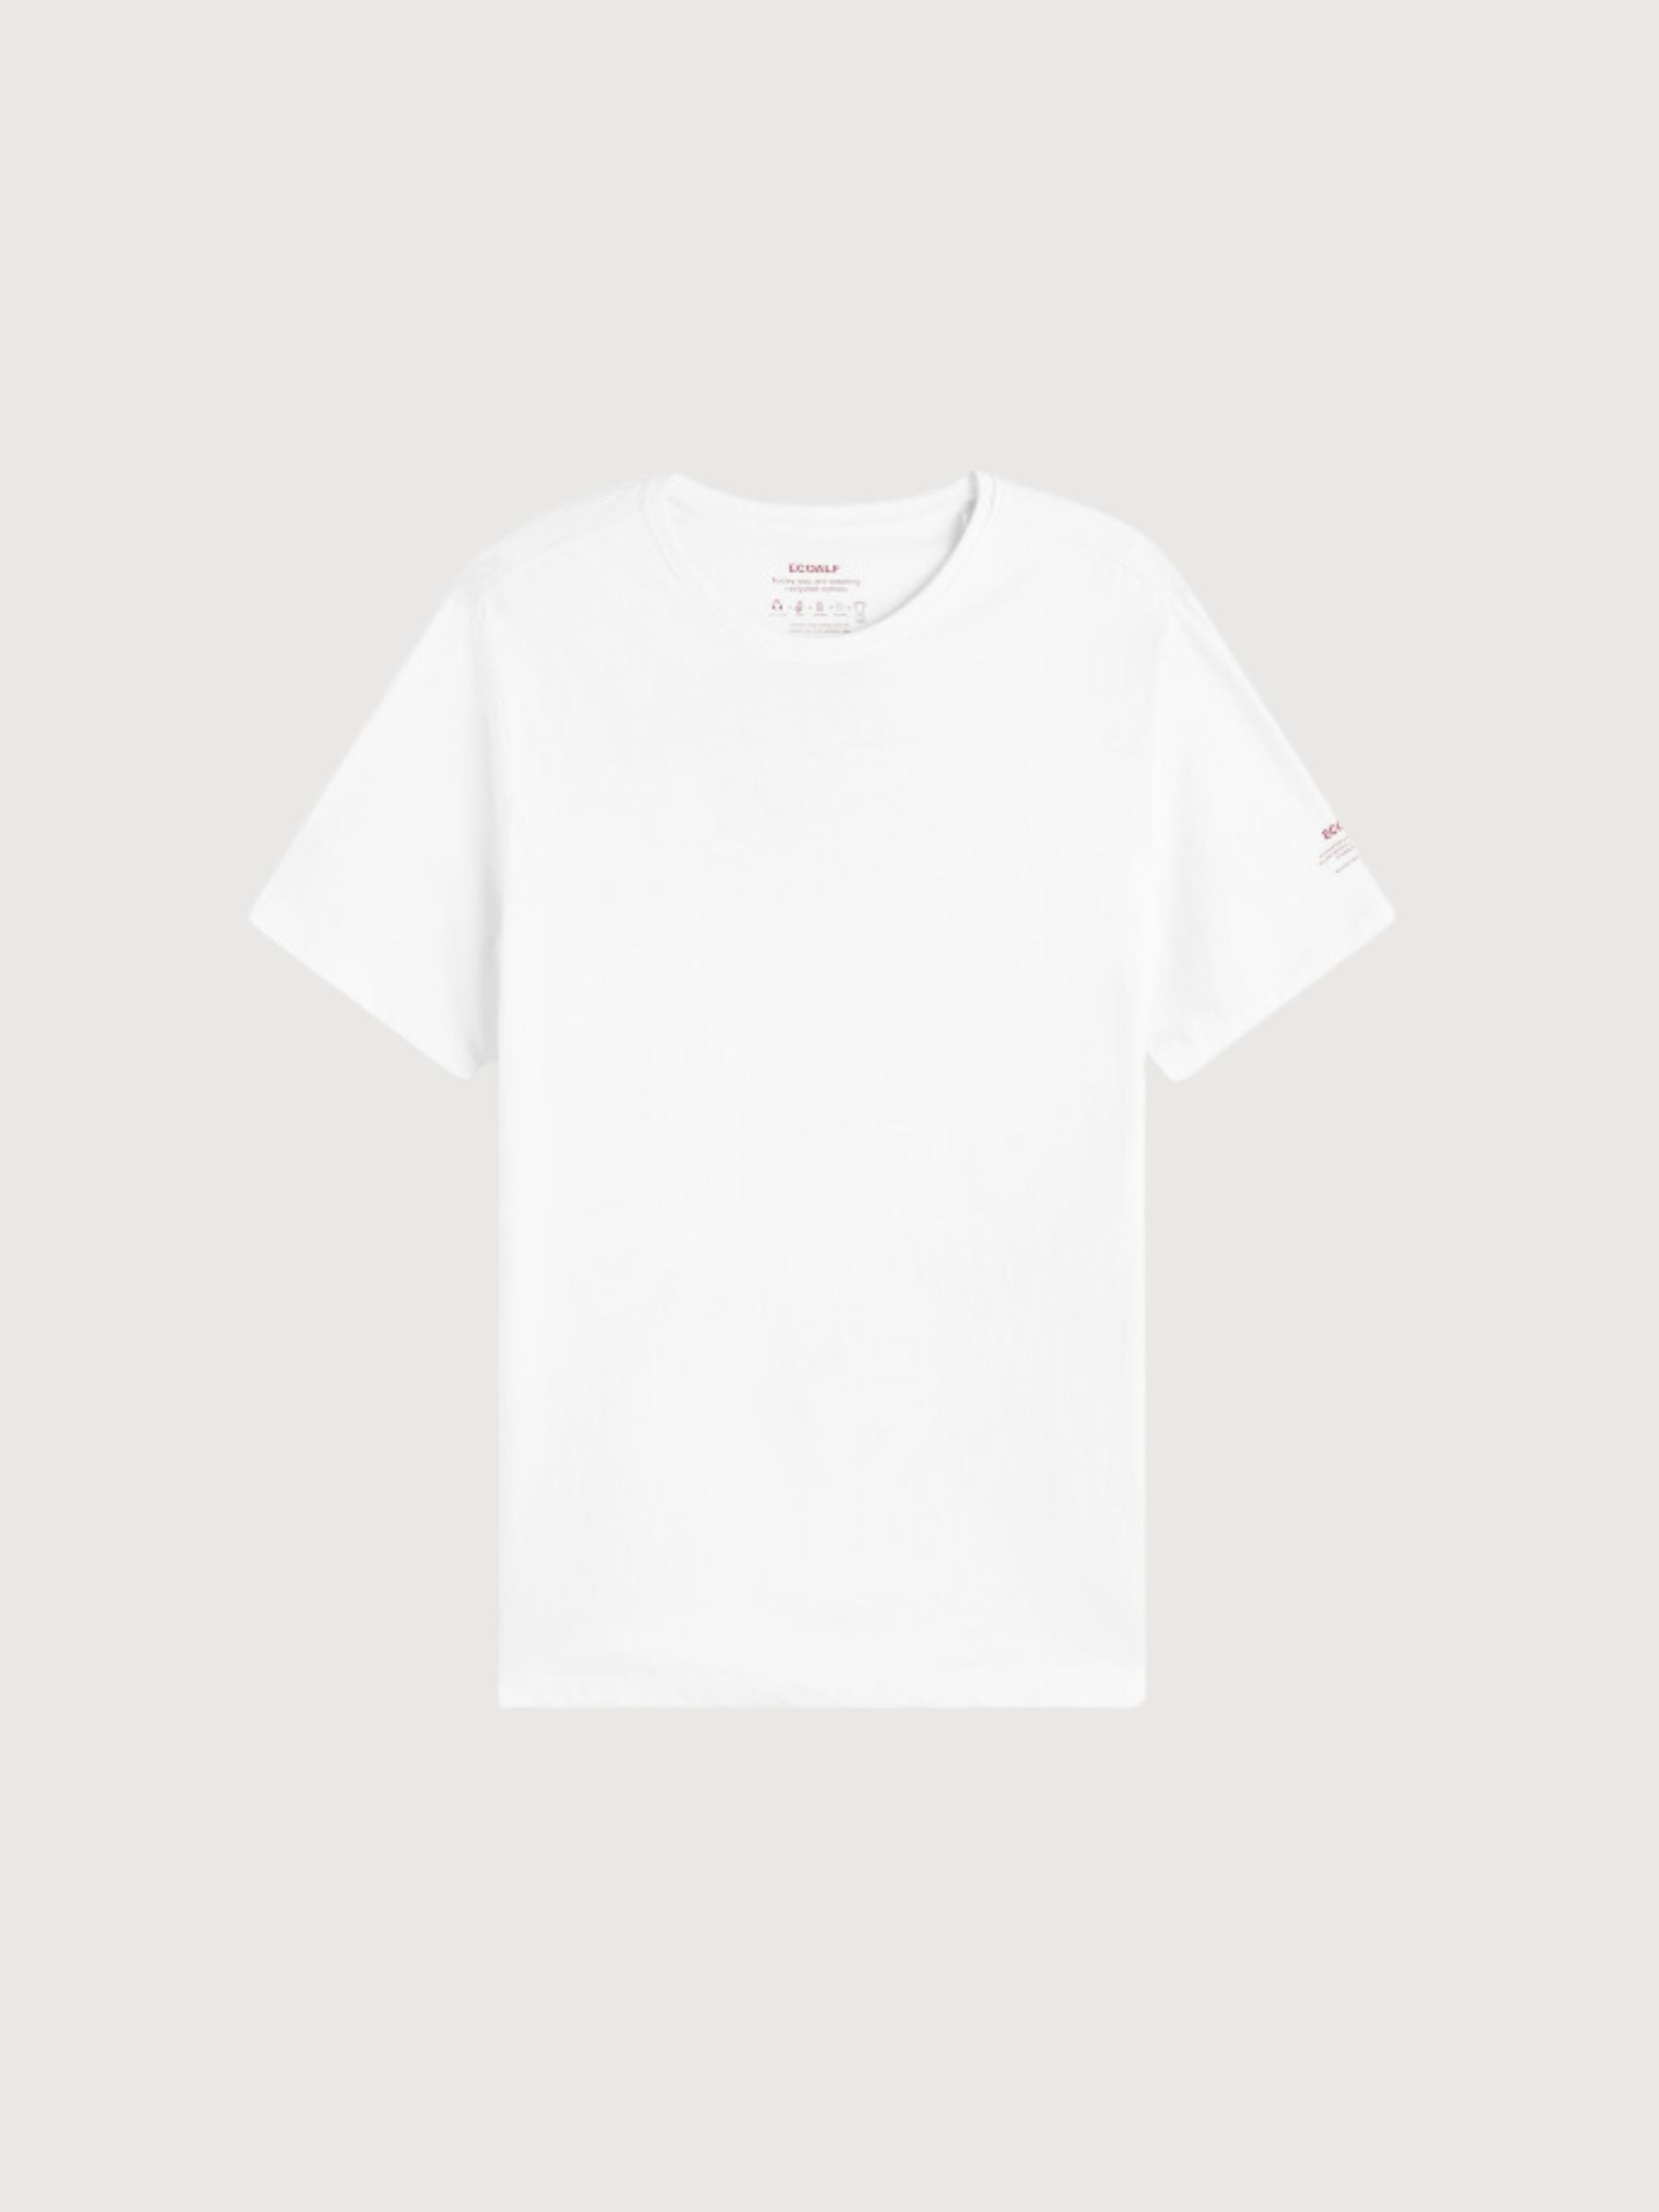 Maglietta Sustano bianco in cotone riciclato | Ecoalf